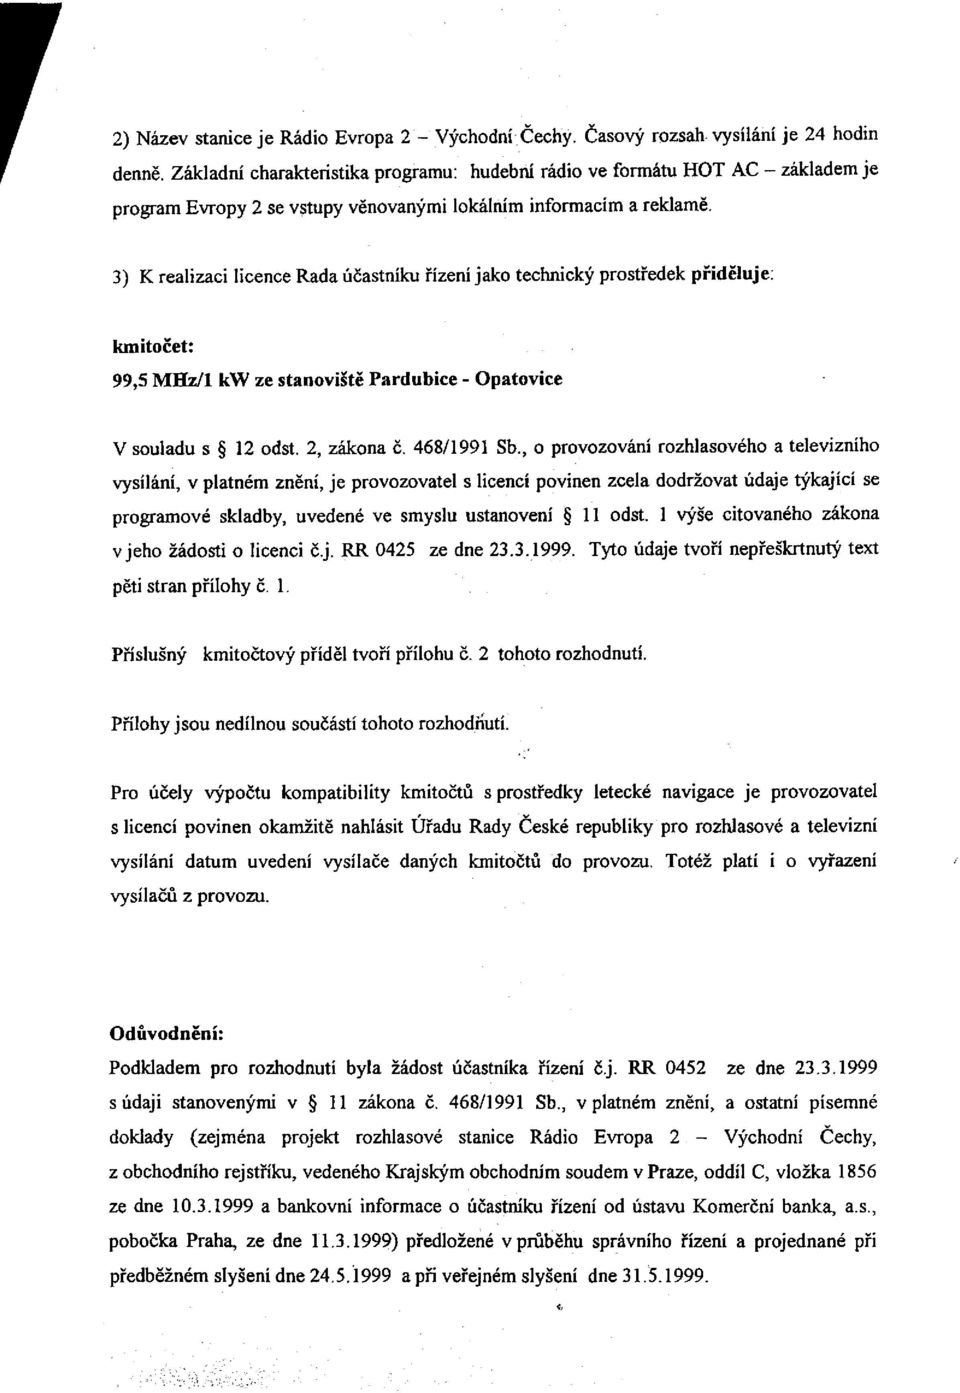 3) K realizaci licence Rada účastníku řízení jako technický prostředek přiděluje: kmitočet: 99,5 MHz/1 kw ze stanoviště Pardubice - Opatovice V souladu s 12 odst. 2, zákona č. 468/1991 Sb.